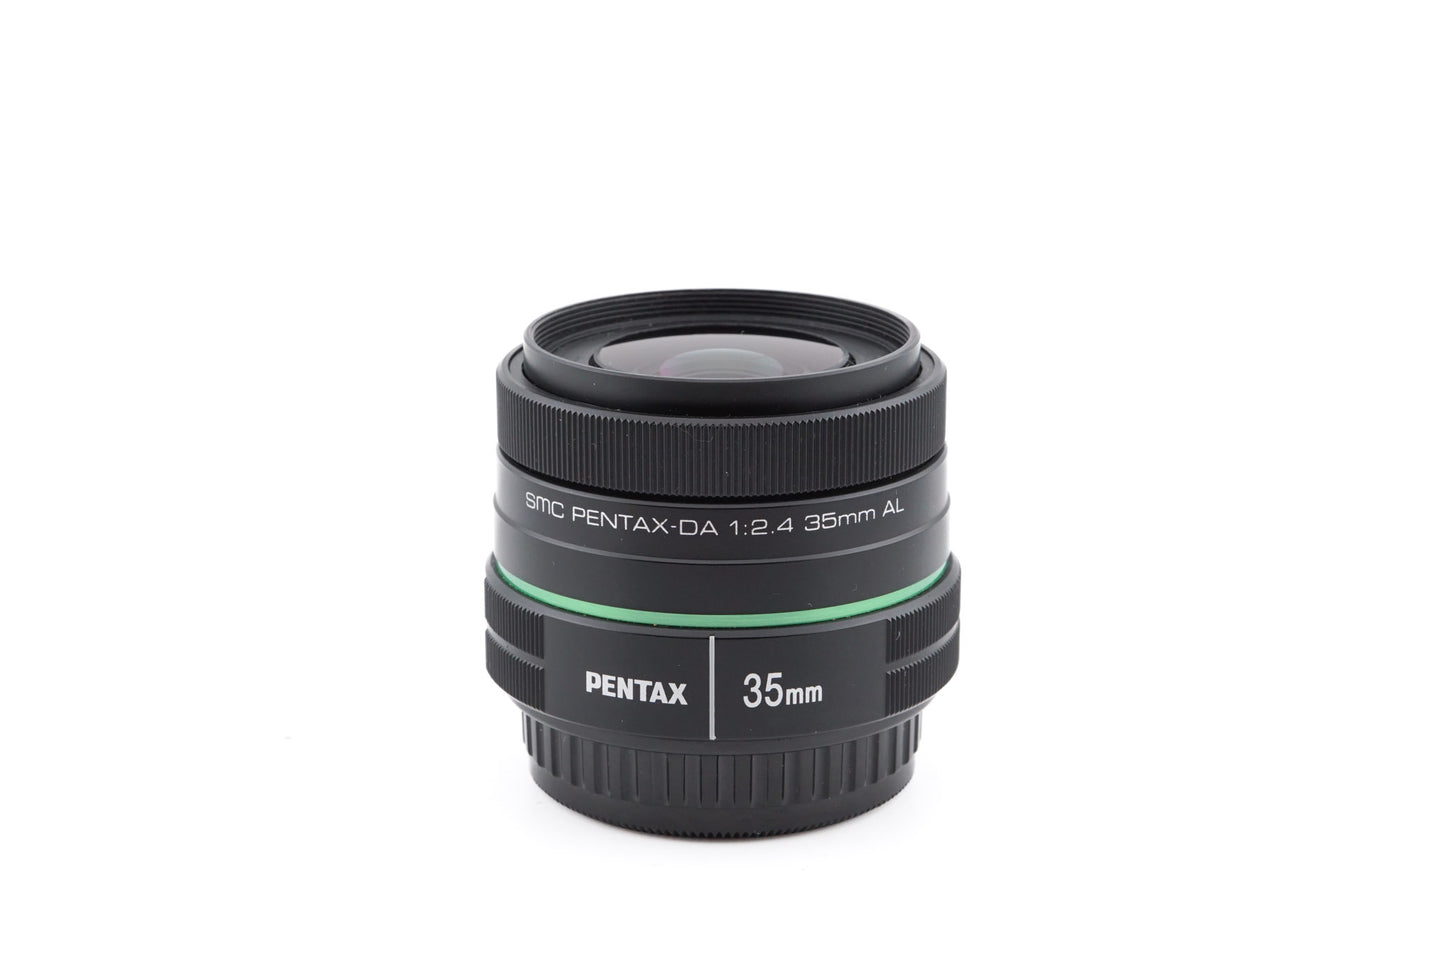 Pentax 35mm f2.4 SMC Pentax-DA AL - Lens